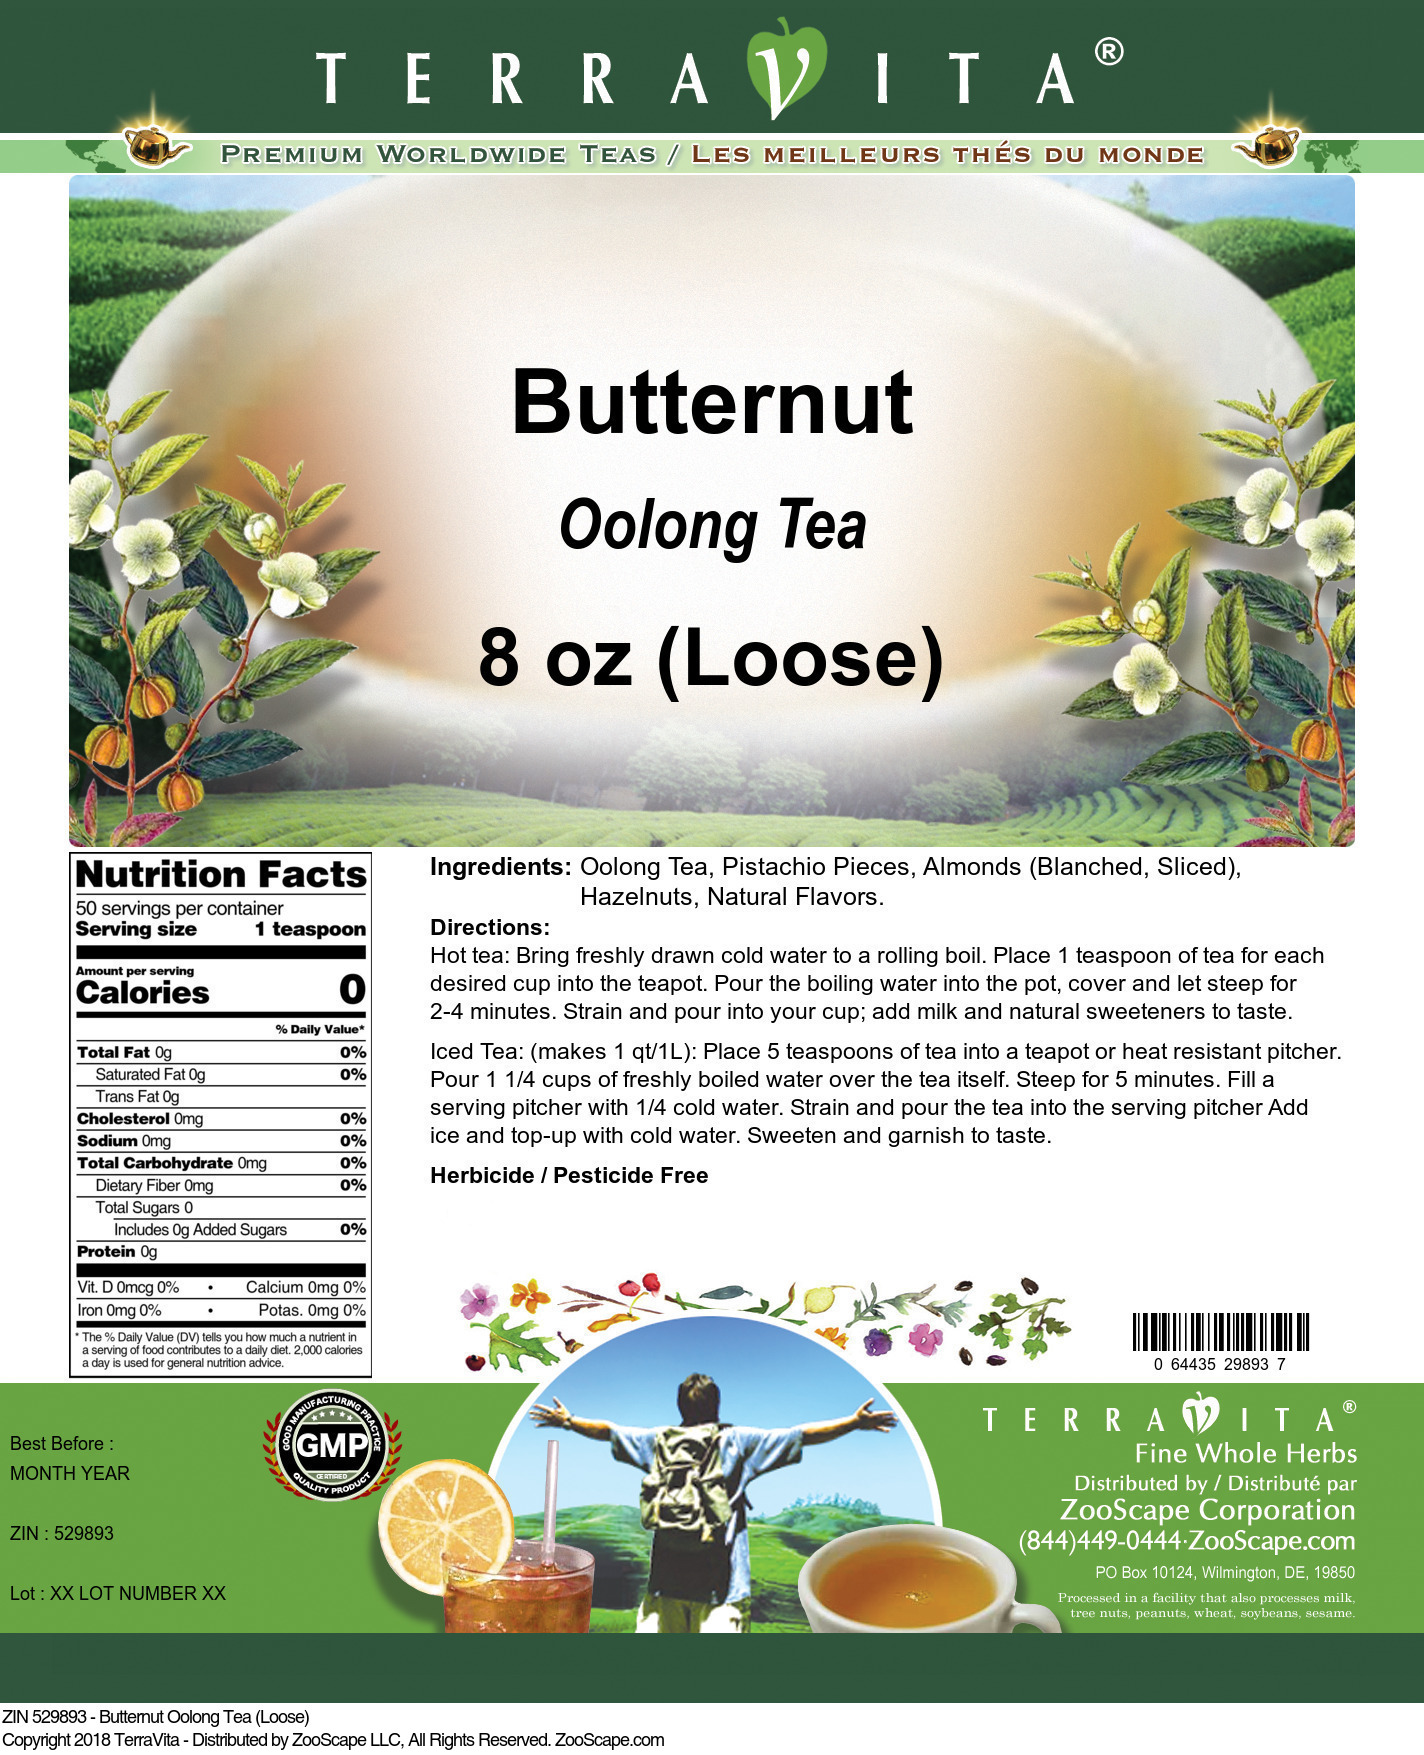 Butternut Oolong Tea (Loose) - Label